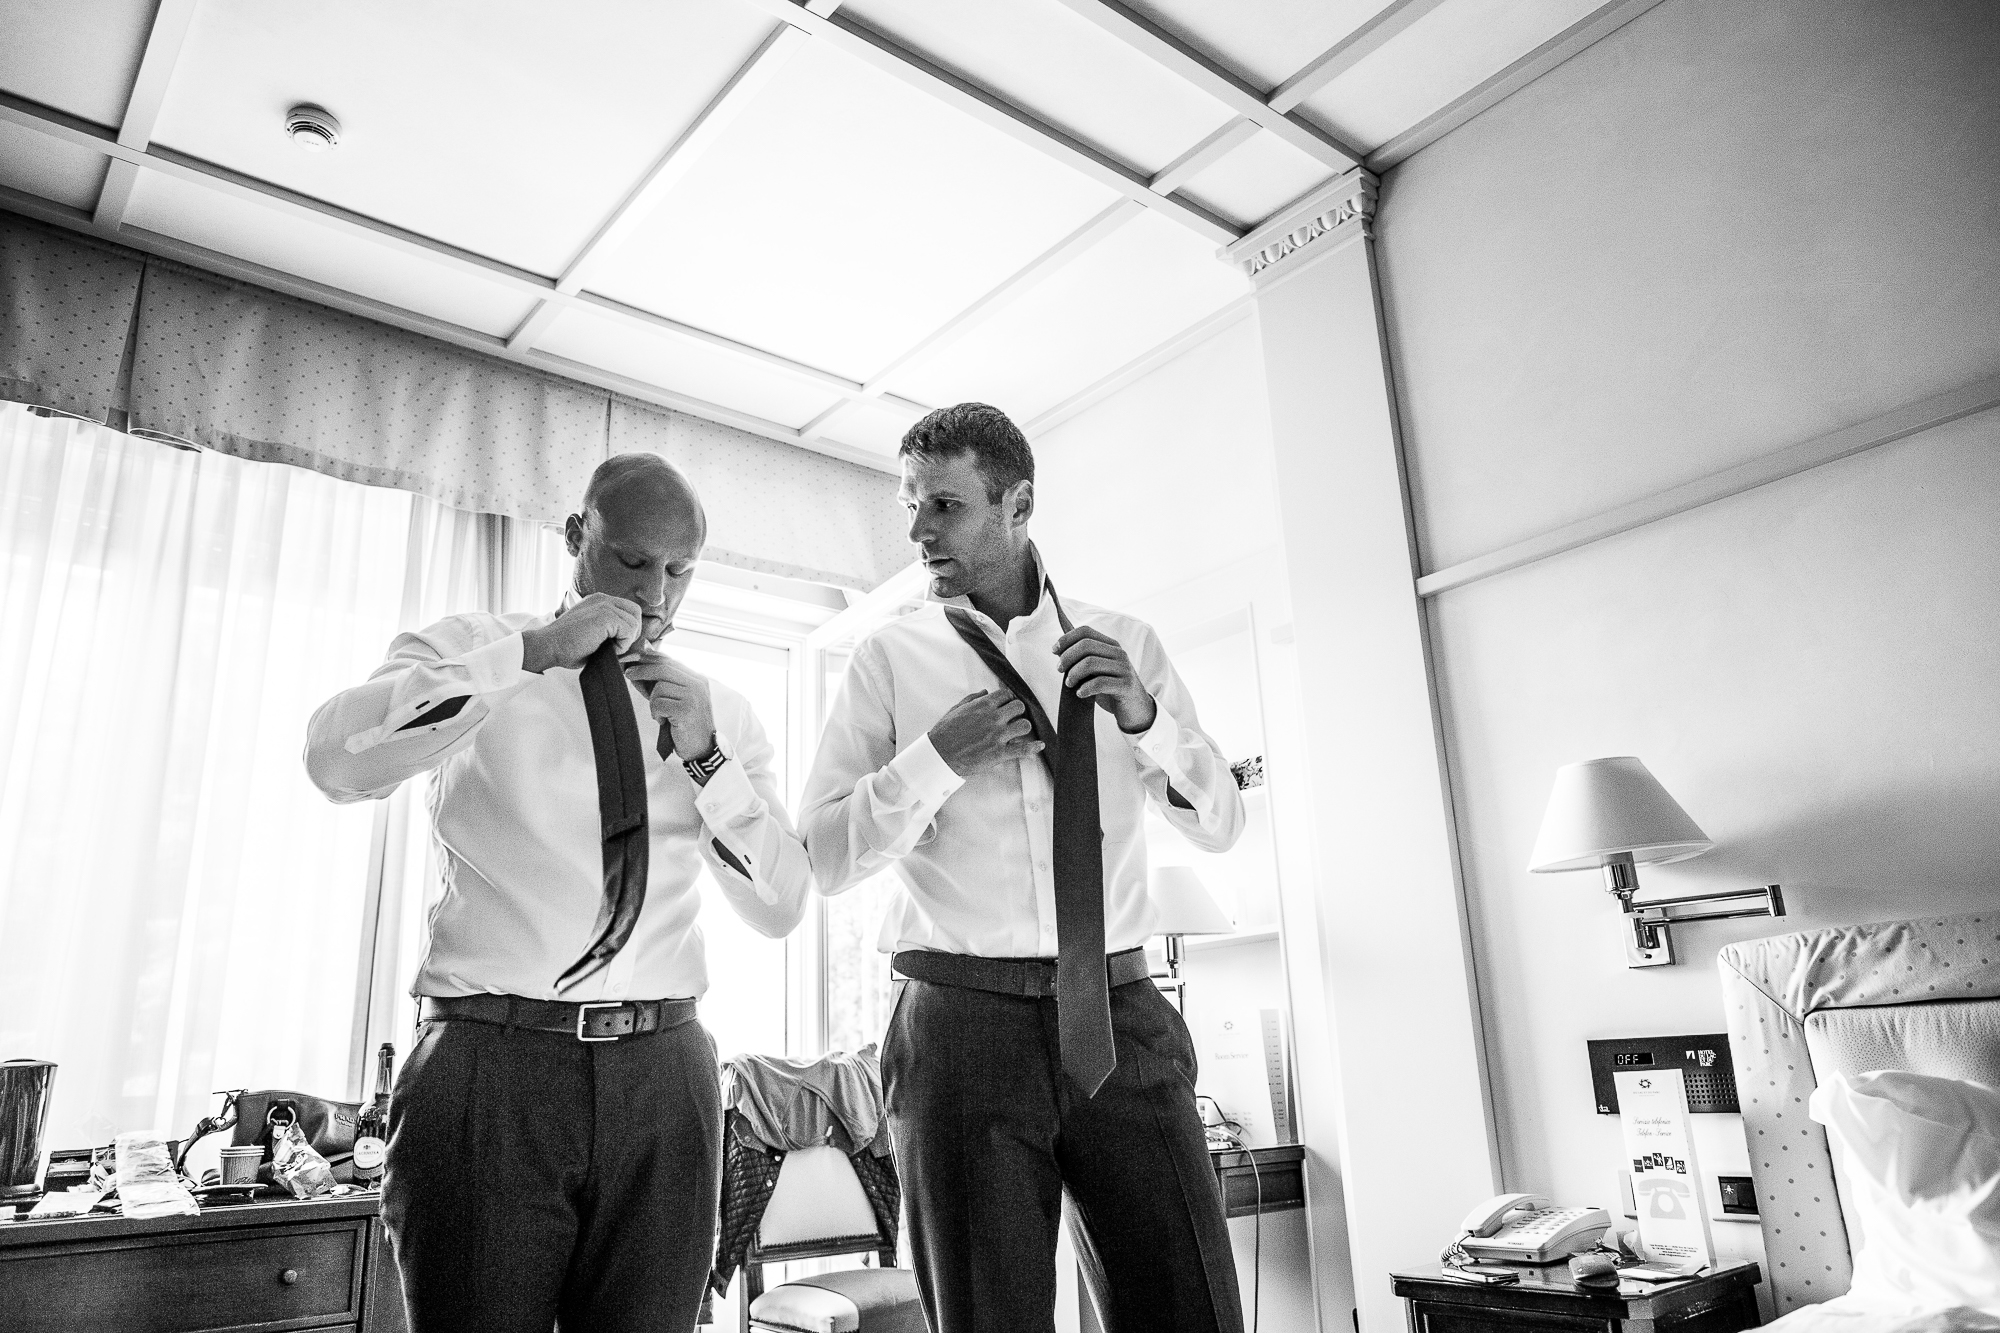 groom, best man, krawatte binden, Hochzeitstag, getting ready, krawatte binden